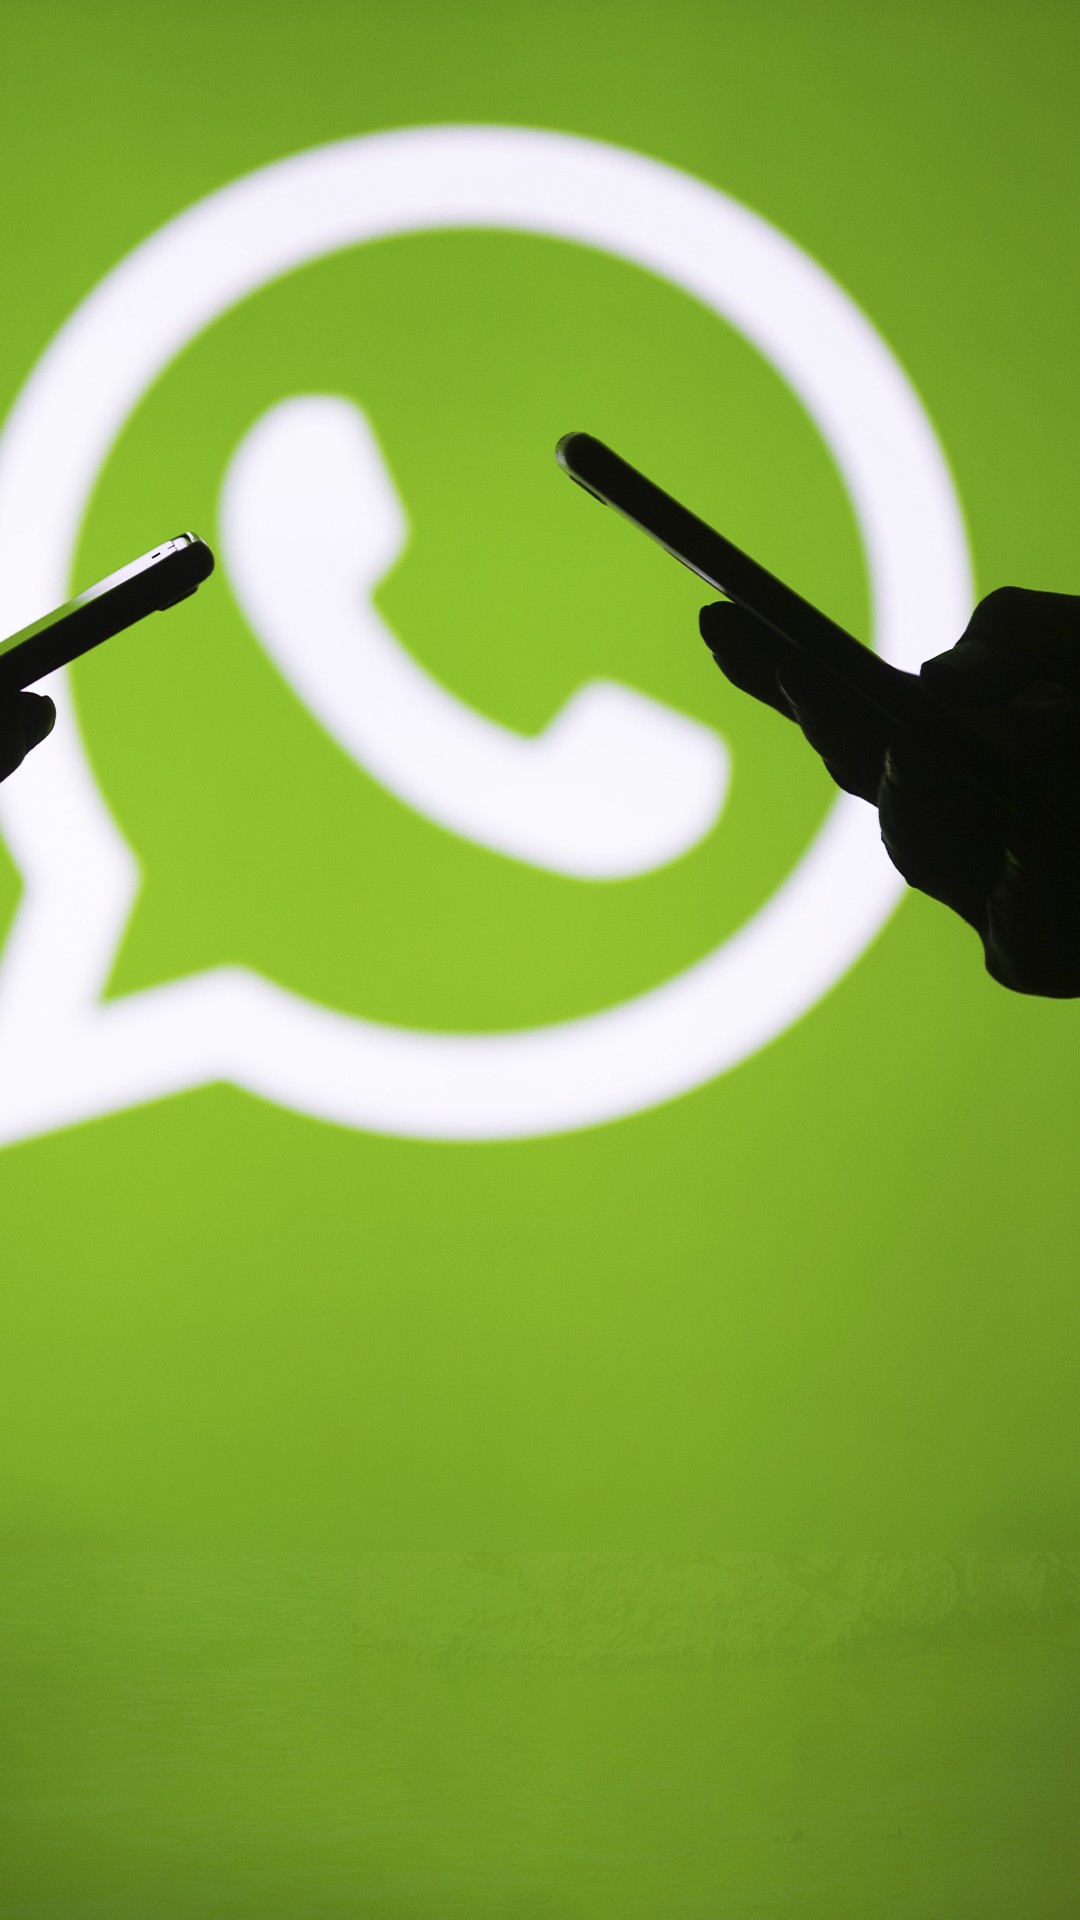 7 gírias do WhatsApp que você já deveria saber o que significam